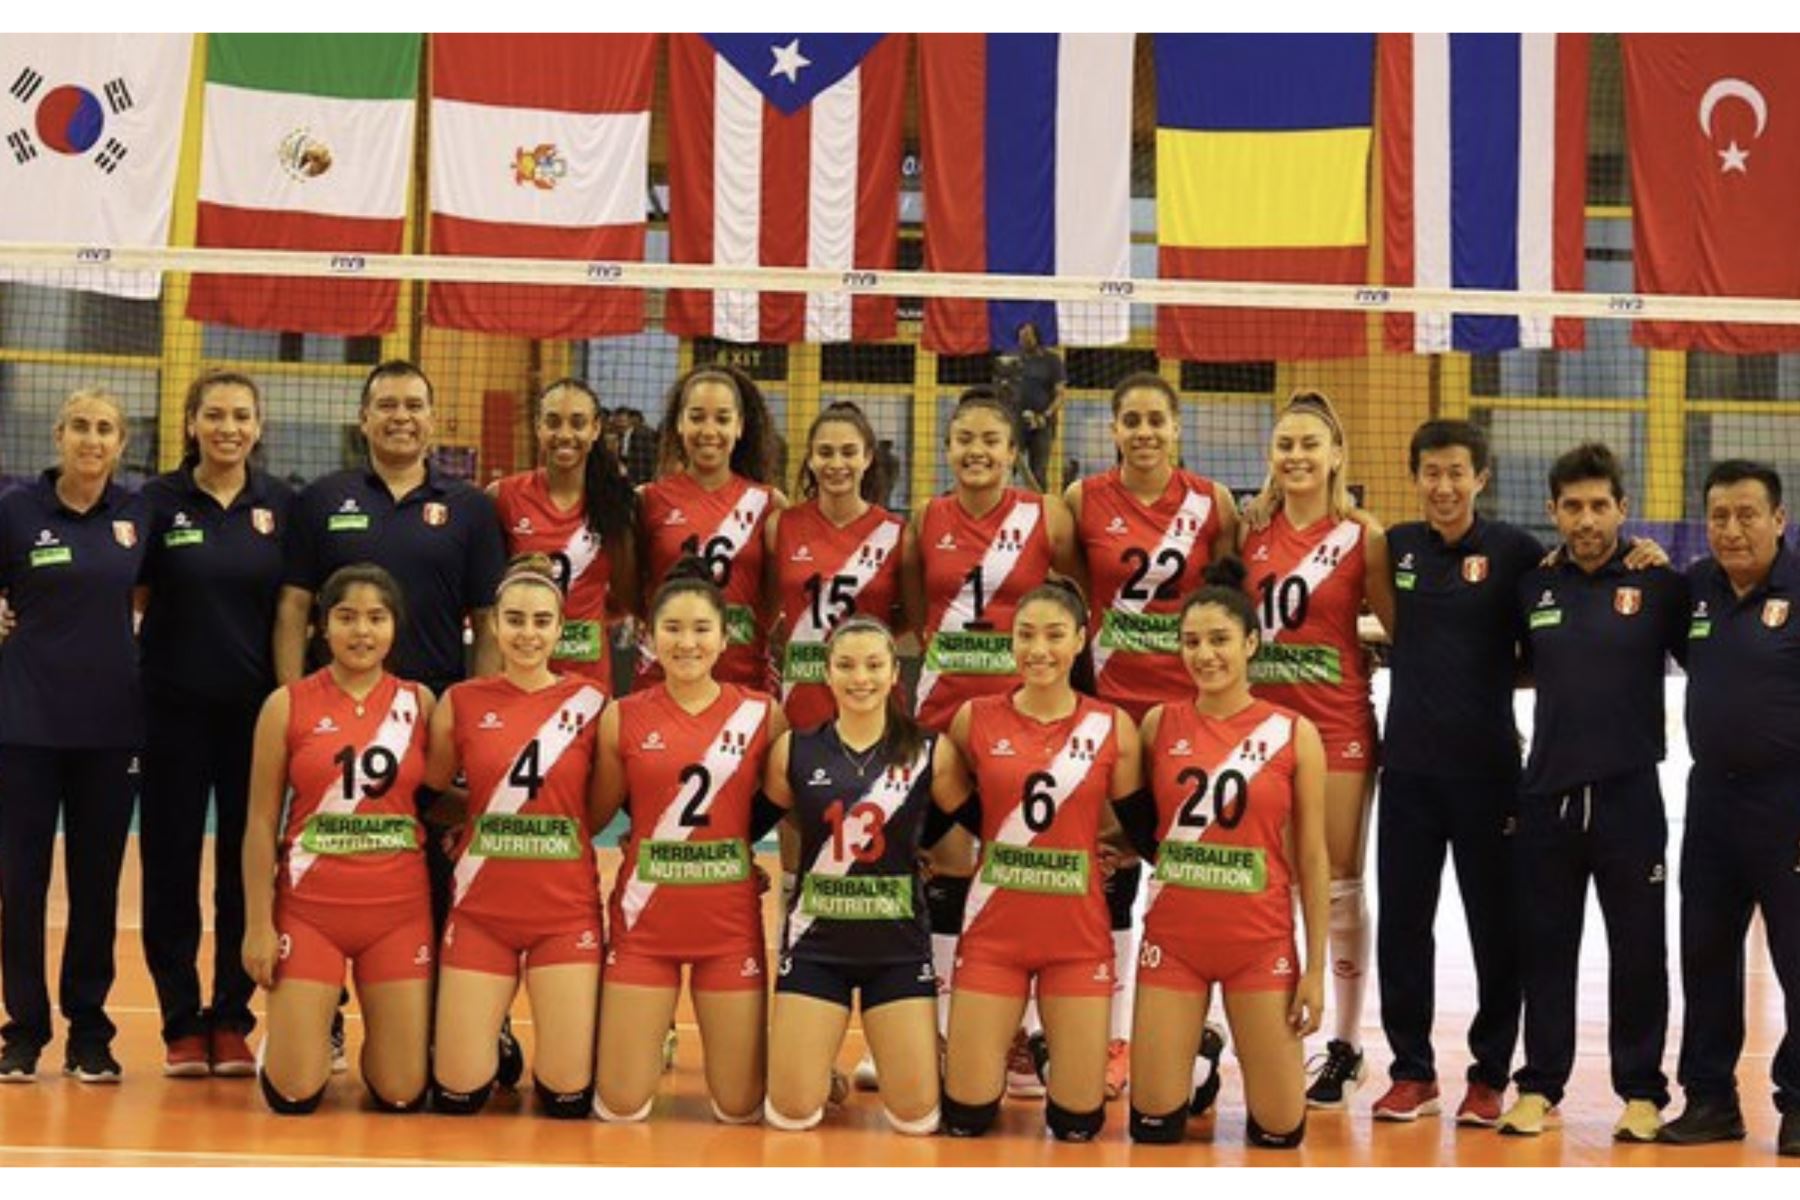 La selección peruana sub-18 sumó un triunfo en el Mundial de Vóley de Egipto. Foto: ANDINA/difusión.